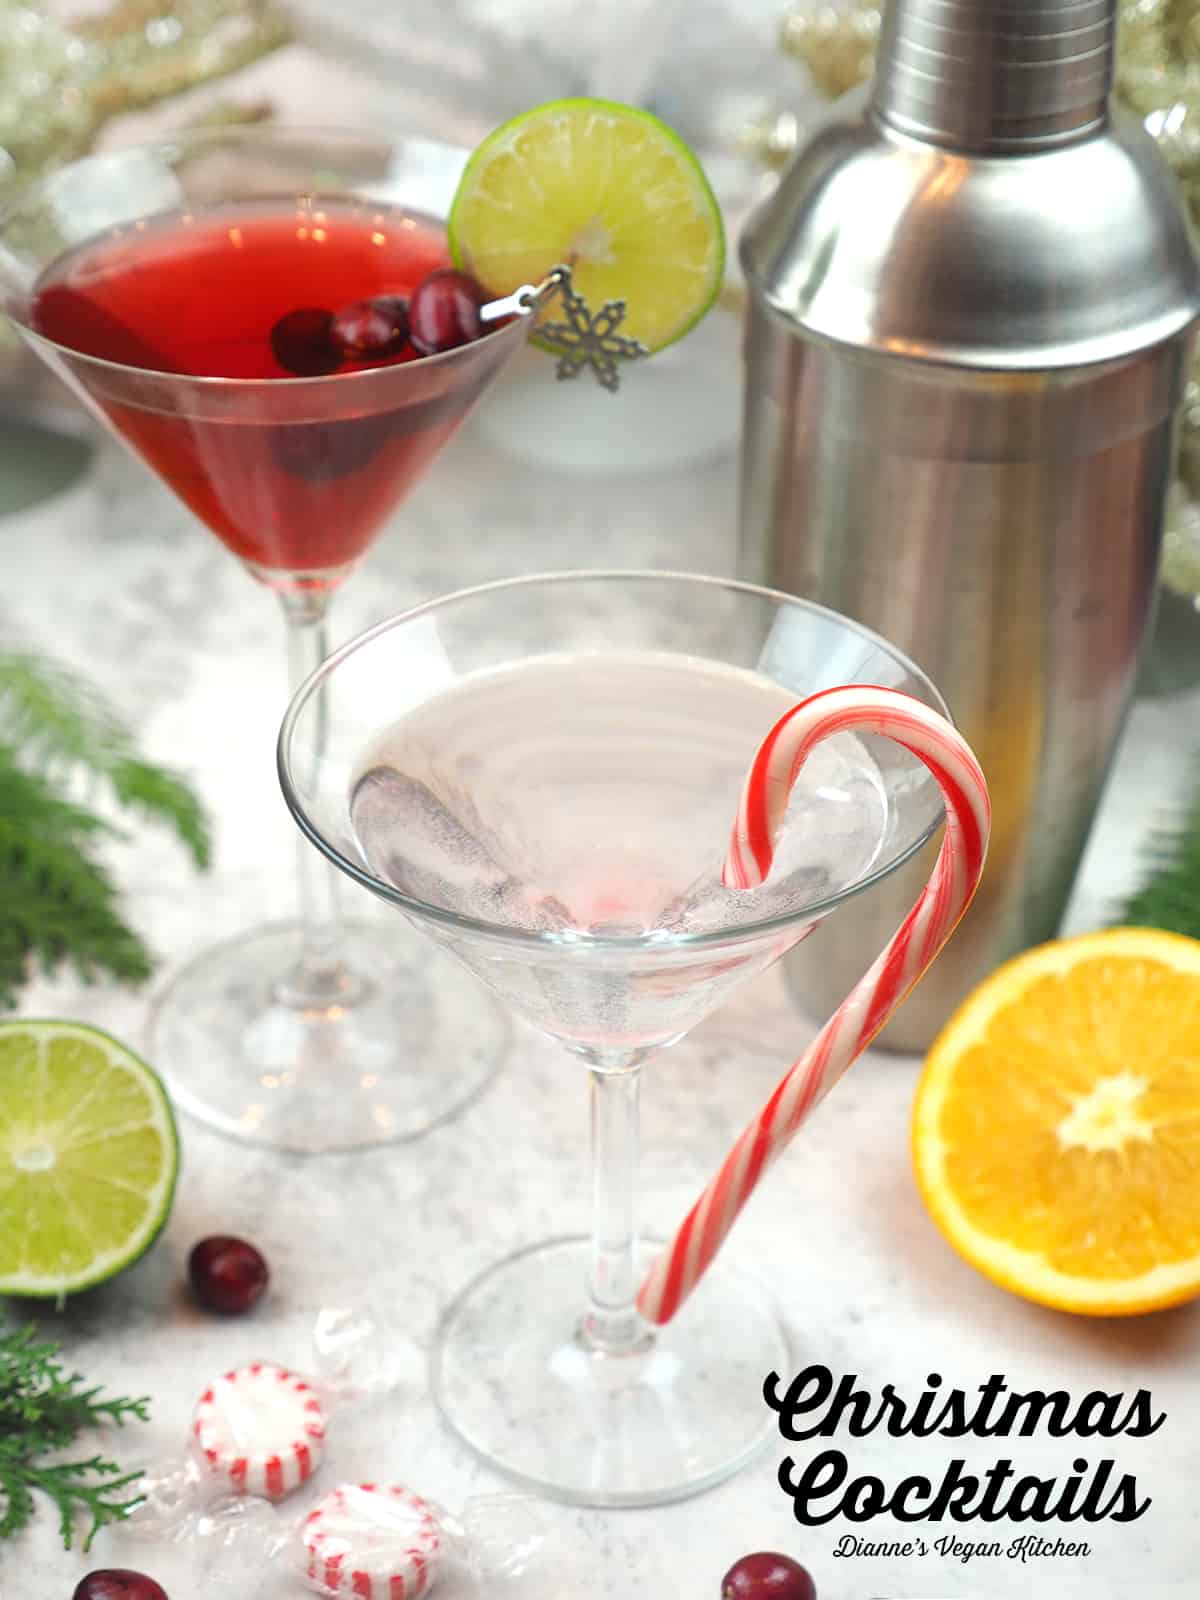 Cocktails de Noël avec superposition de texte